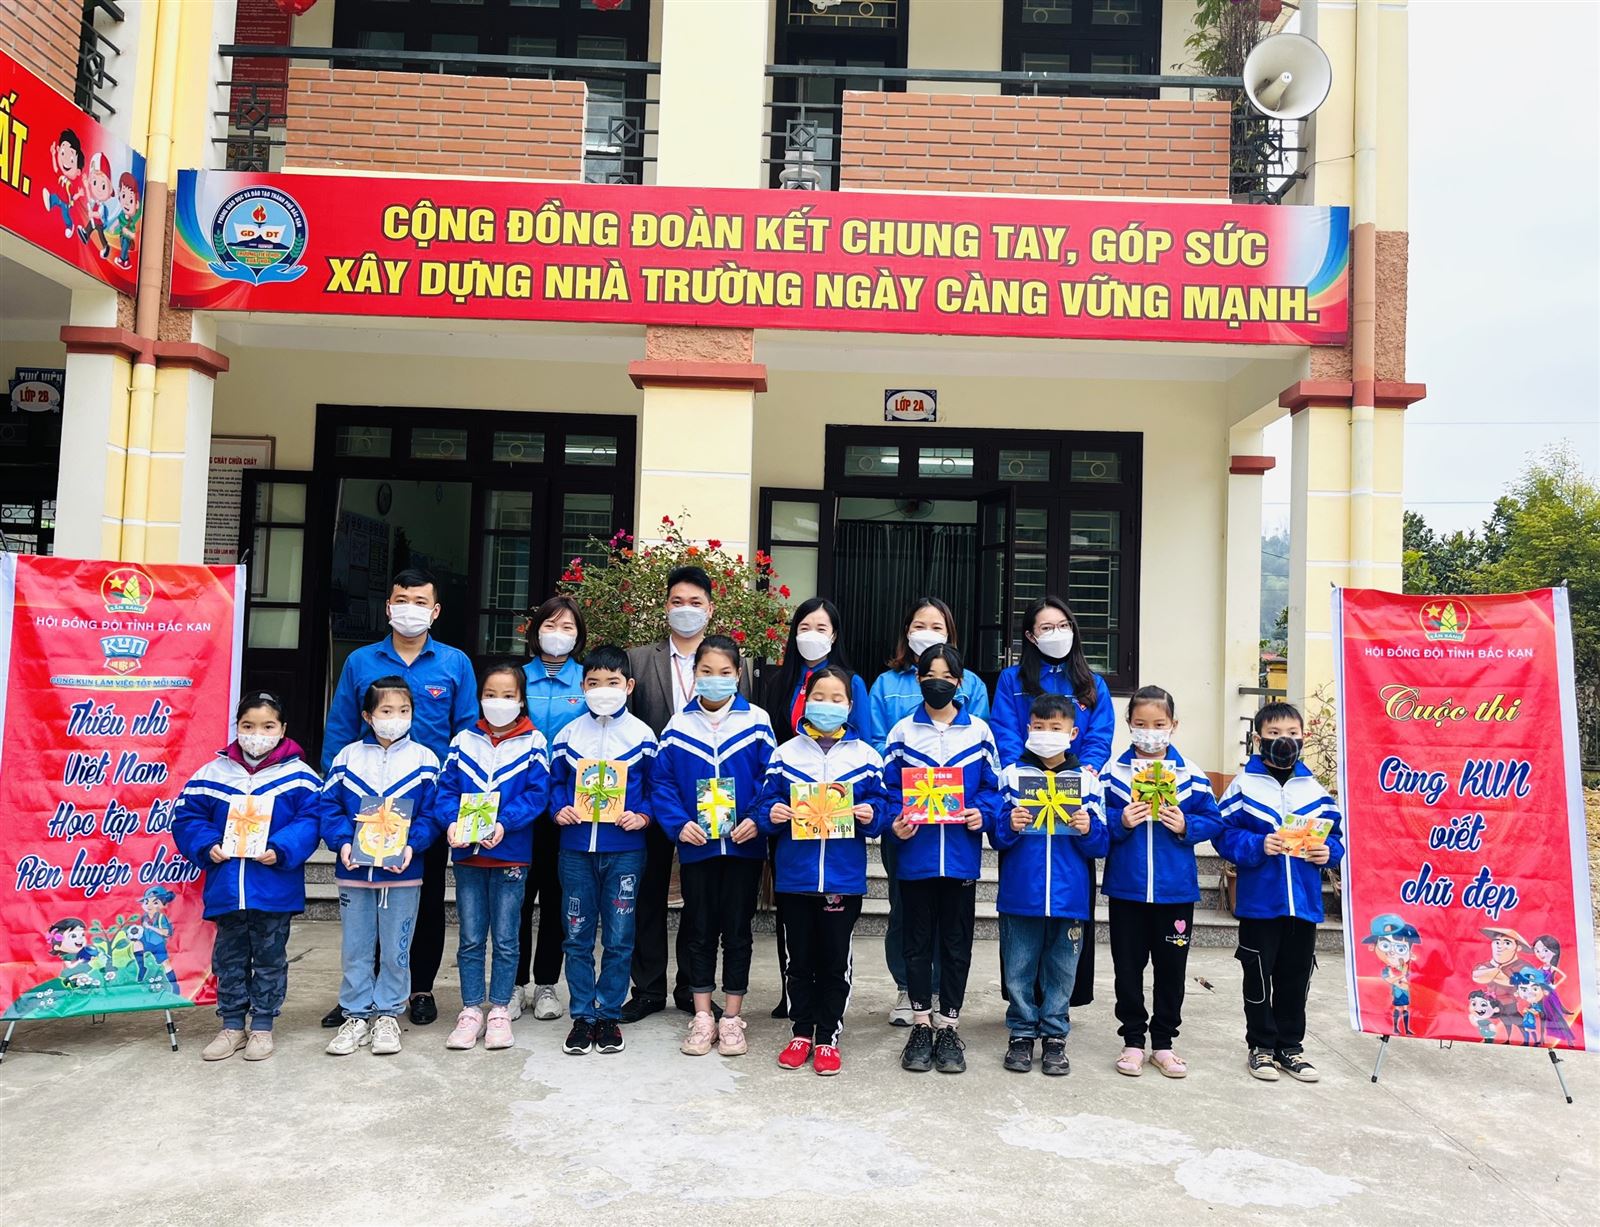 Bắc Kạn tổ chức Lễ phát động Cuộc thi “Cùng KUN viết chữ đẹp” tại Trường Tiểu học Xuất Hoá, thành phố Bắc Kạn.